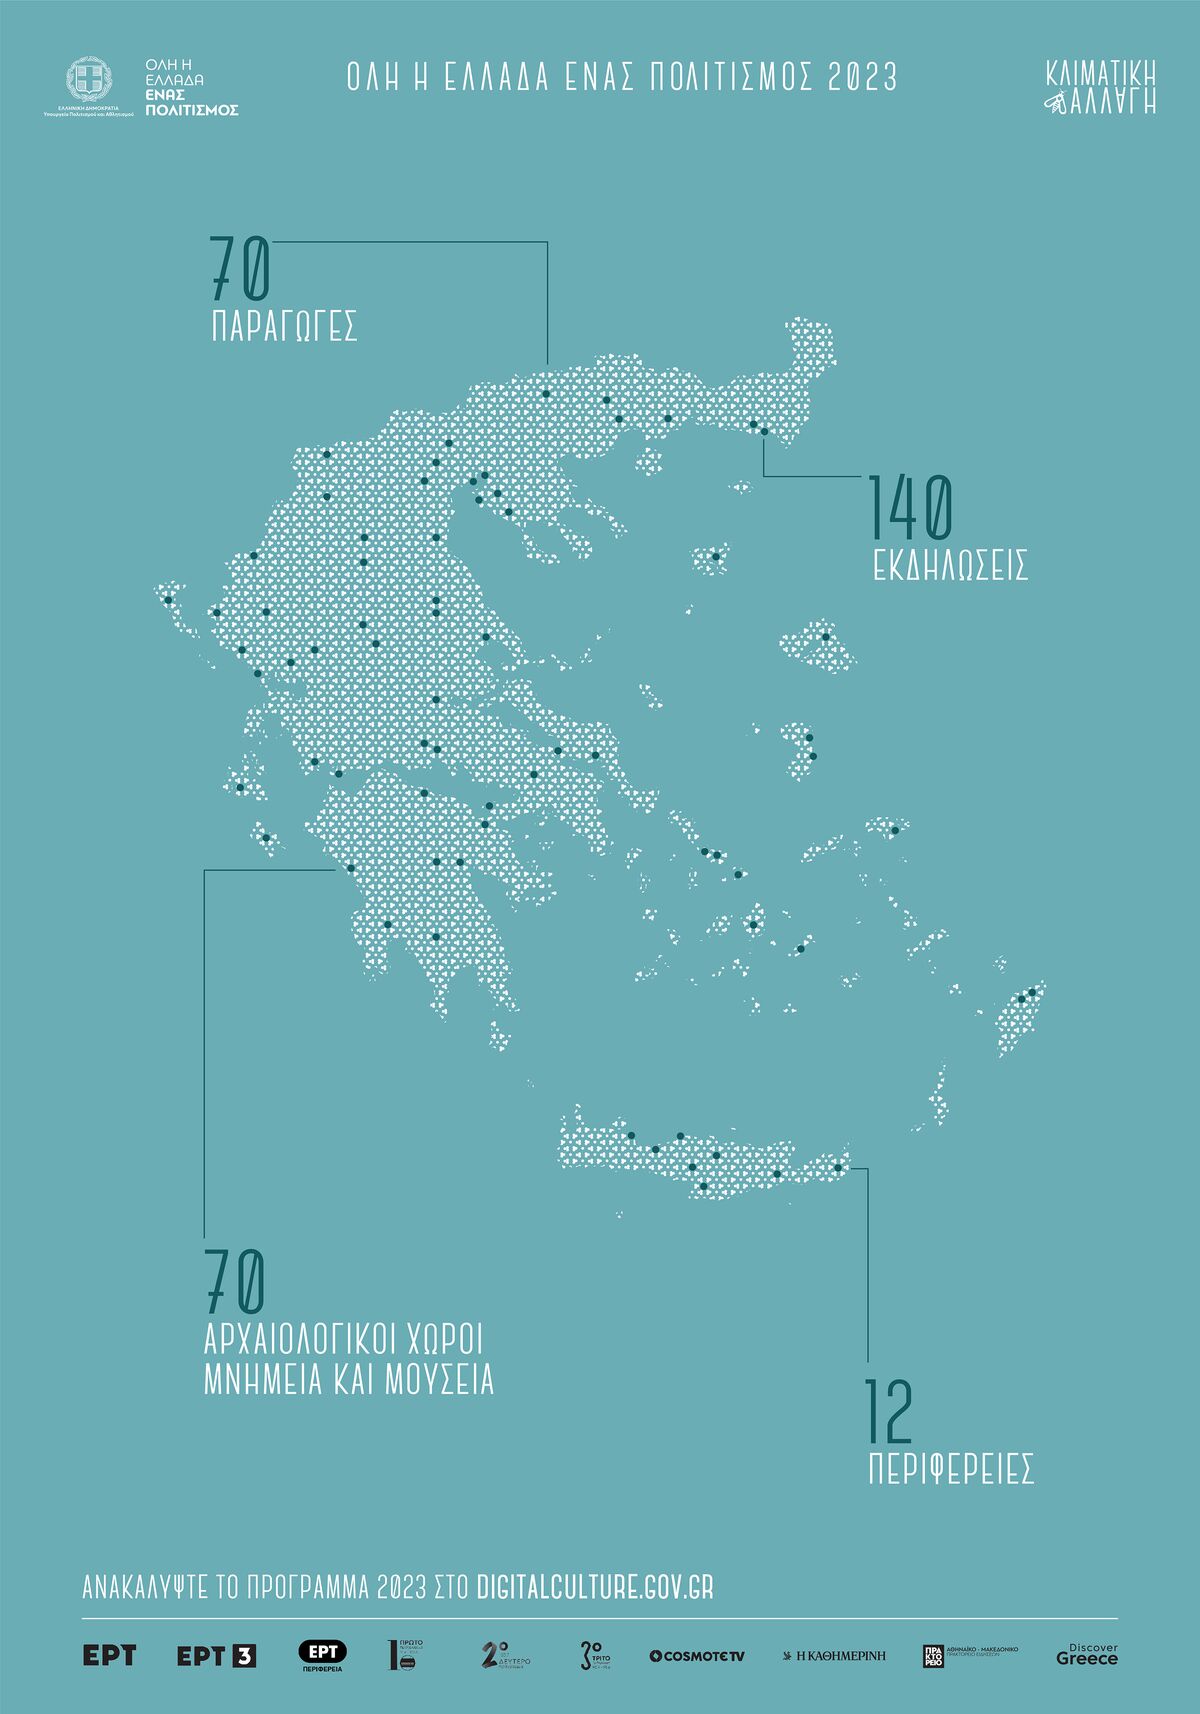 Όλη η Ελλάδα ένας πολιτισμός 2023: Η παρουσίαση του προγράμματος